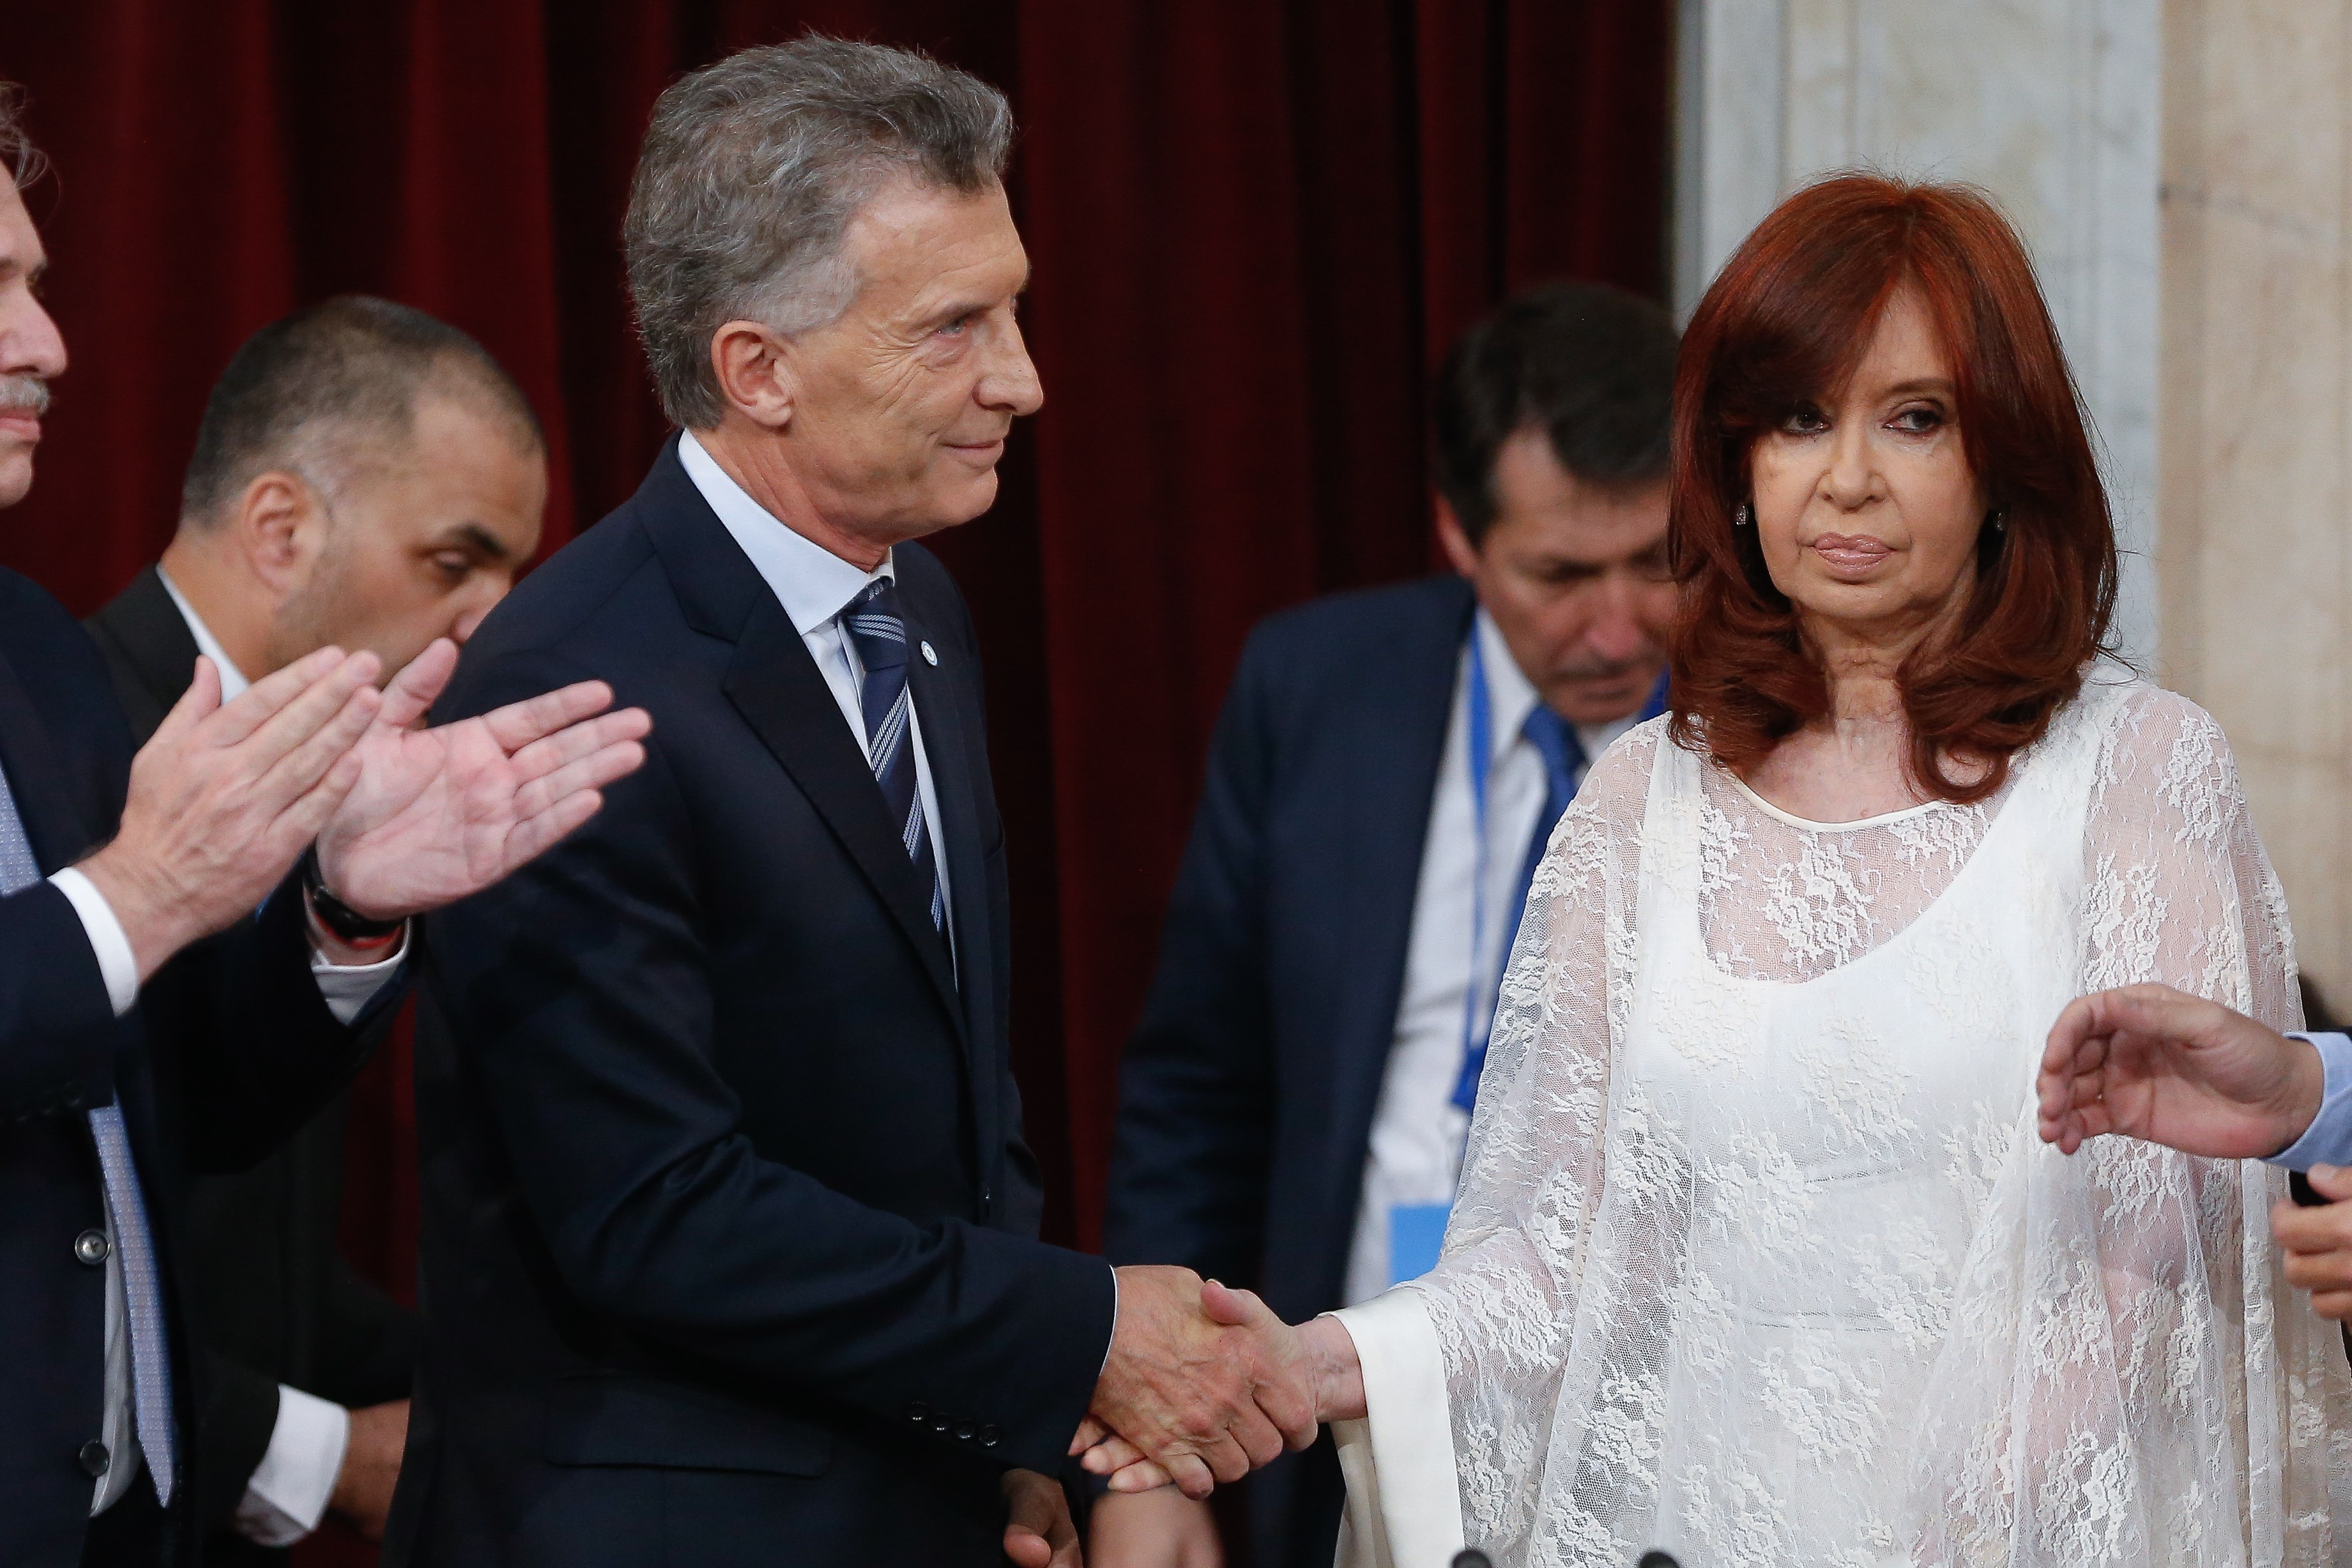 La última vez que Macri y Cristina estuvieron cara a cara fue el 10 de diciembre de 2019, en el traspaso de mando (EFE)